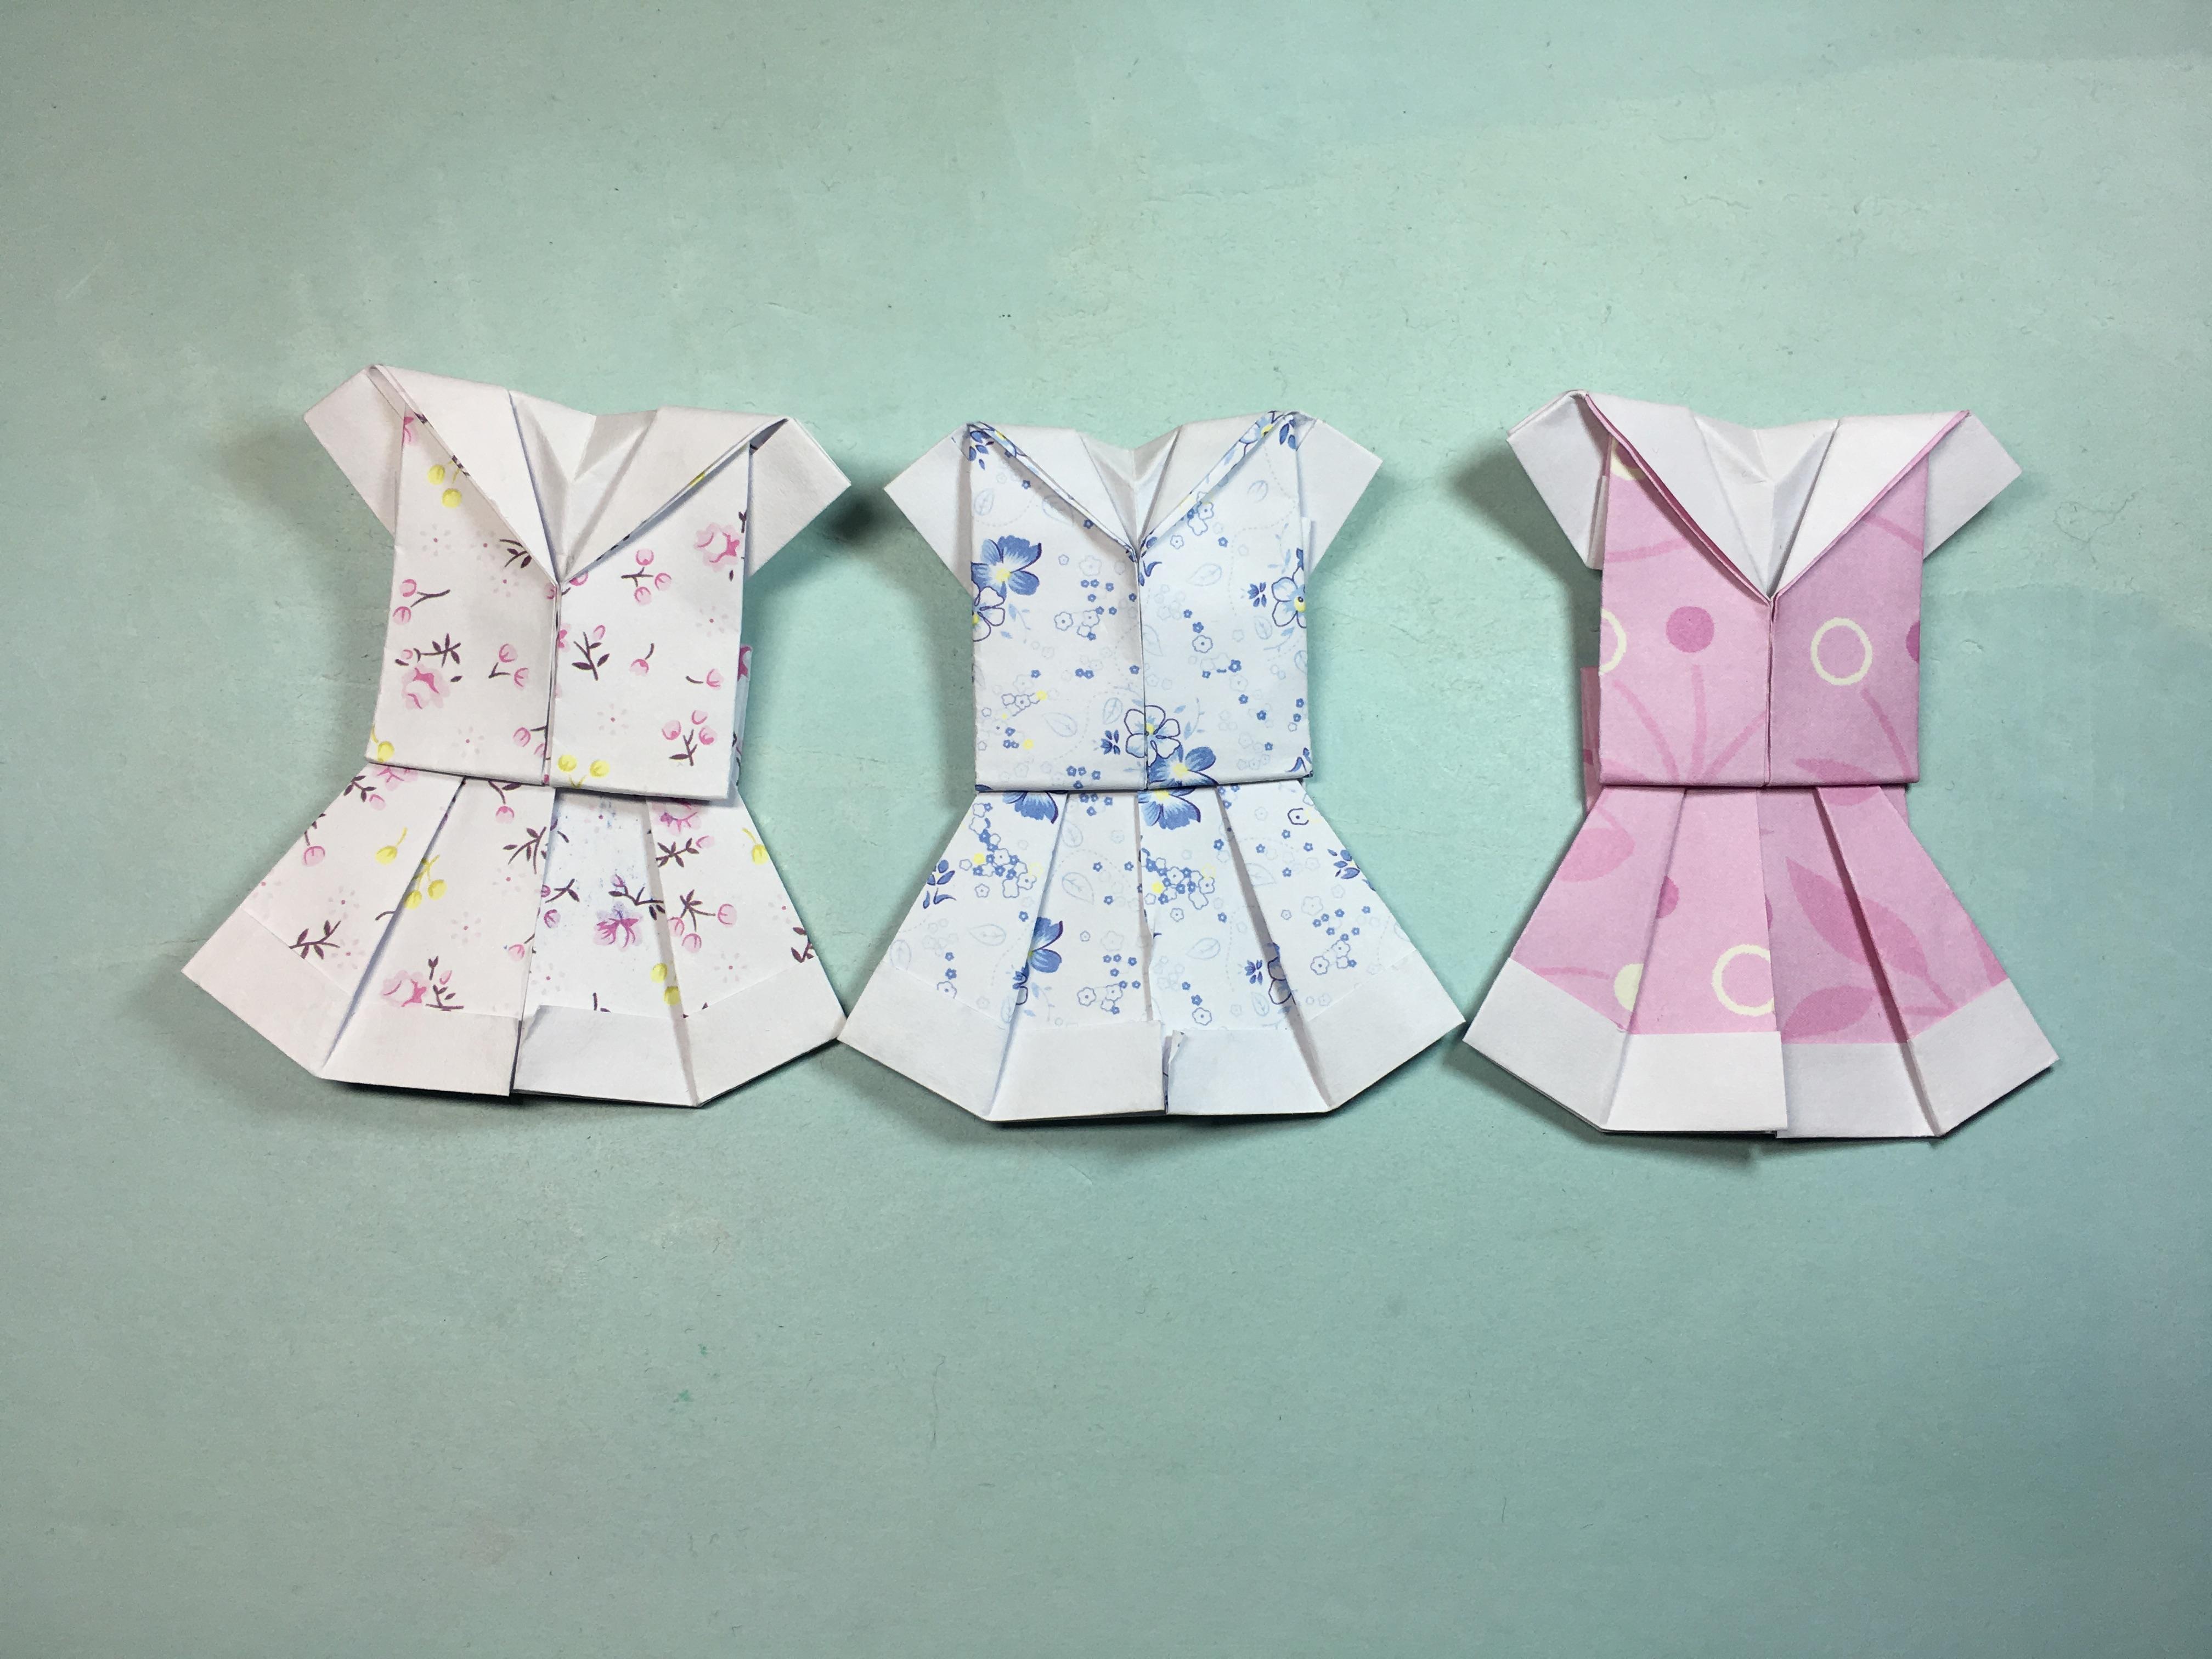 的手工折纸服装裙子,3分钟学会小碎花裙子的折法-手工折纸大全.